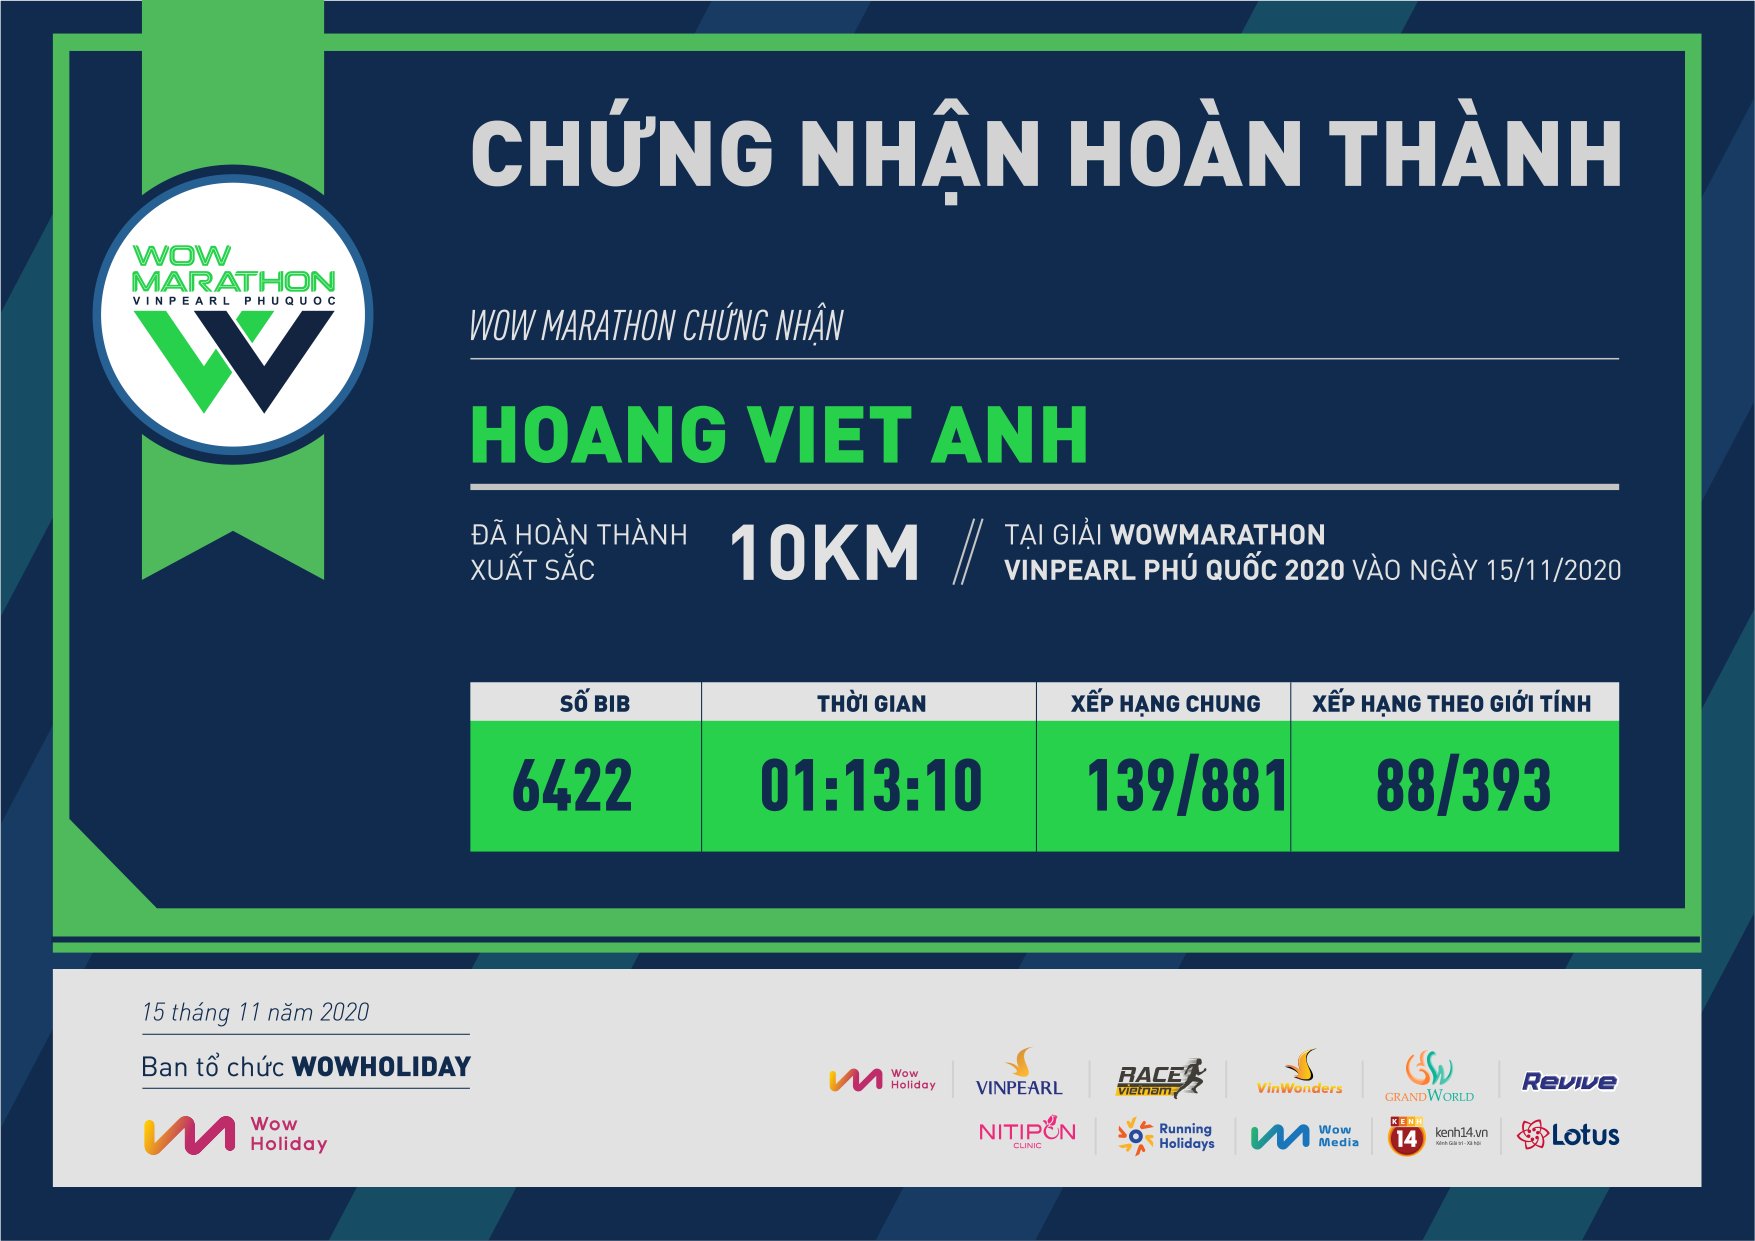 6422 - Hoang Viet Anh